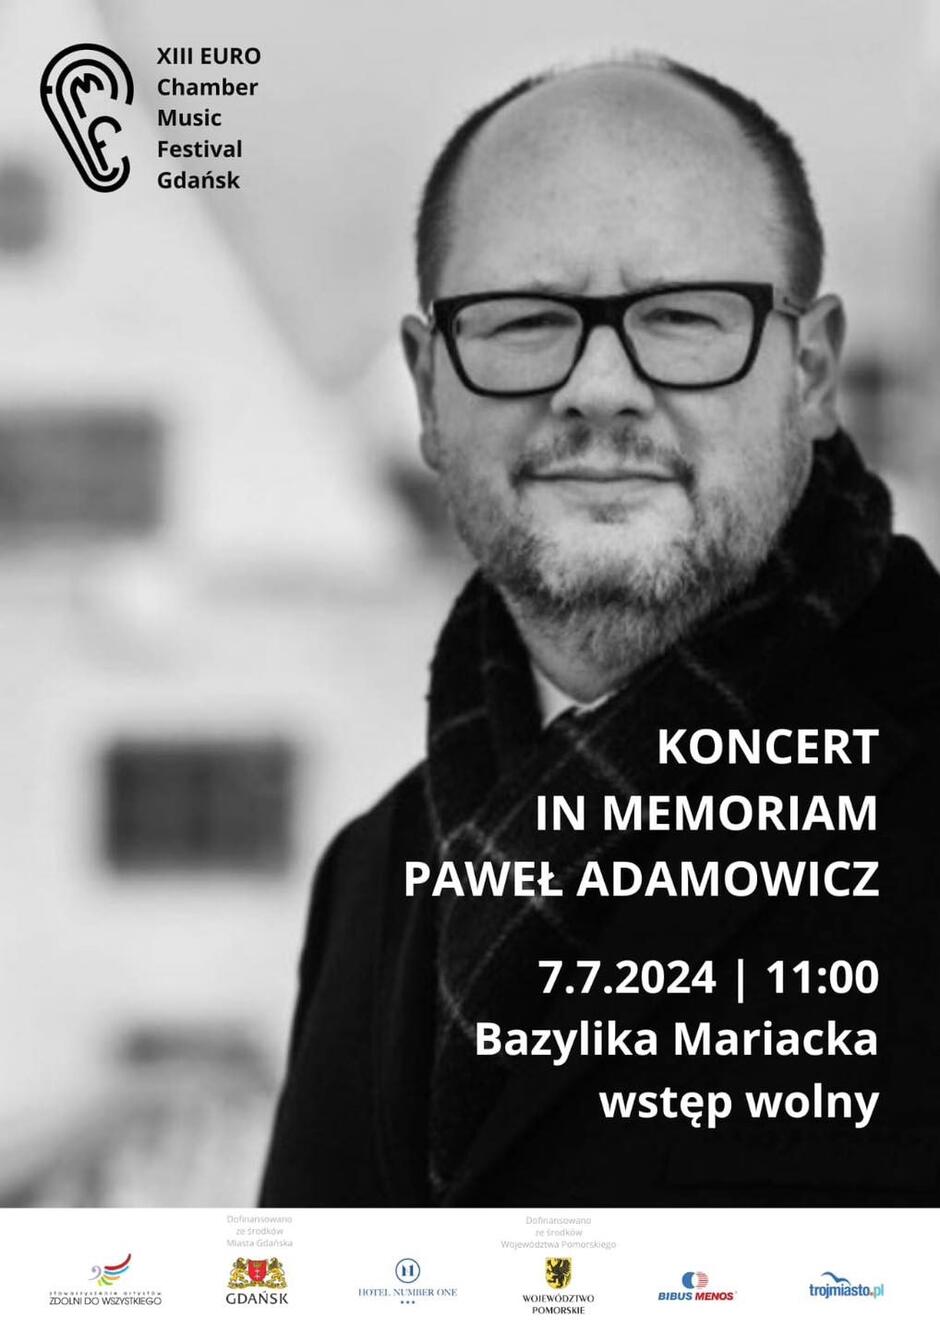 Plakat z wizerunkiem prezydenta Adamowicza i informacjami o koncercie